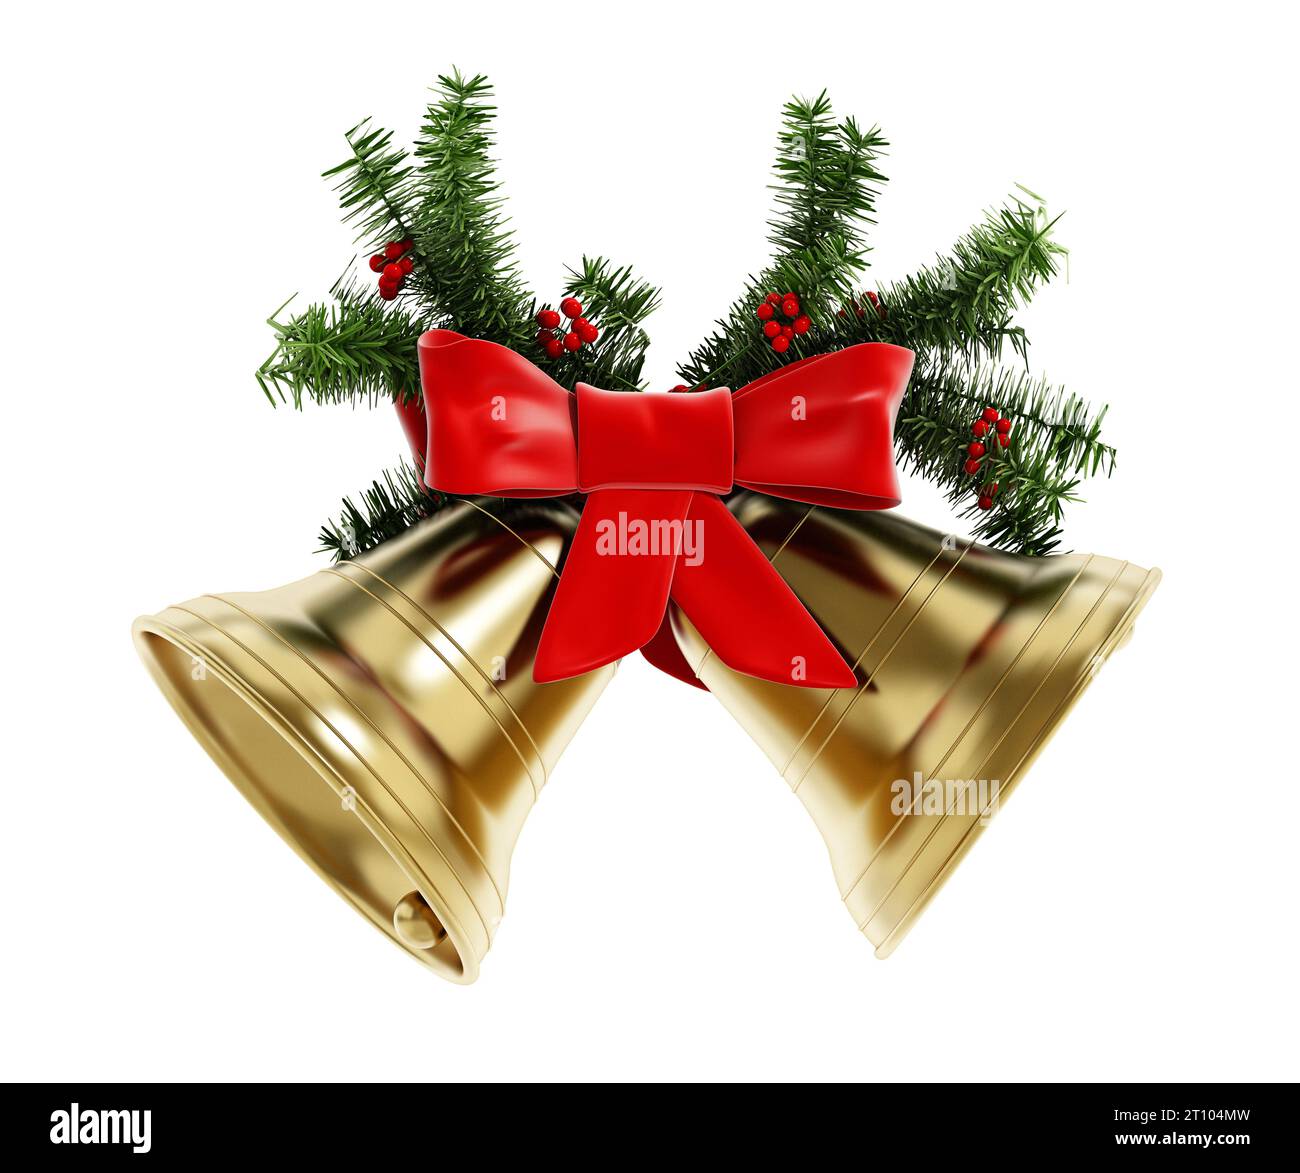 Goldene Weihnachtsglocken, rotes Band und Tannenzweige isoliert auf weißem Hintergrund. 3D-Abbildung. Stockfoto